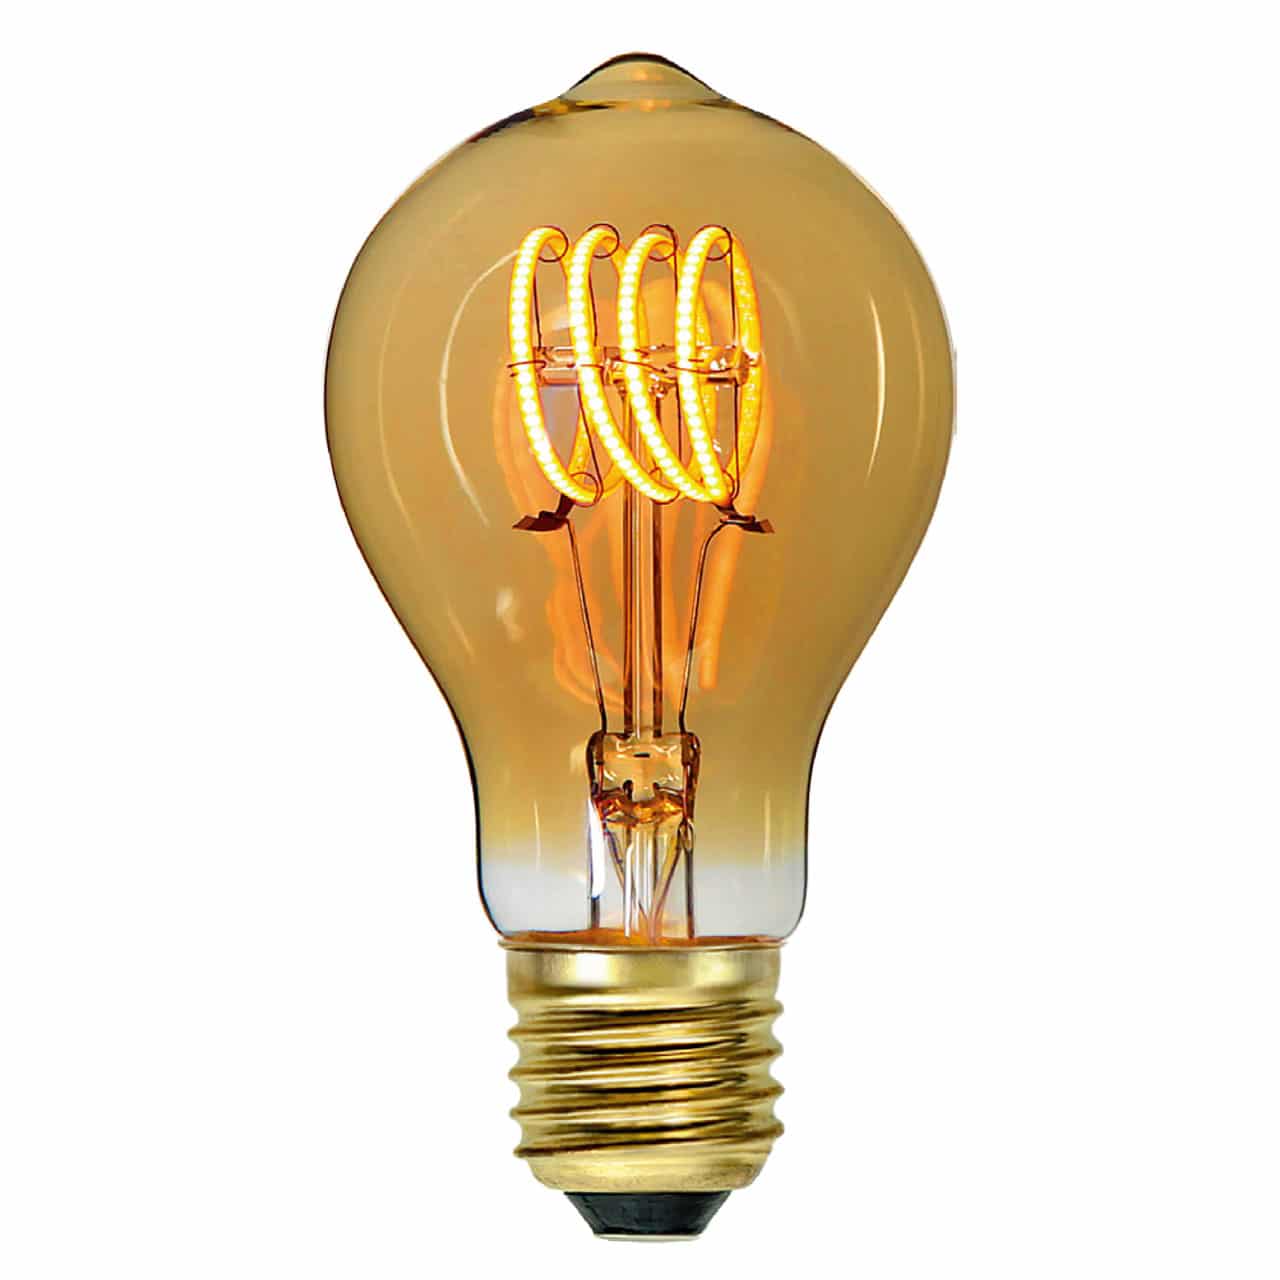 Groot universum bagage Tact Standaard goud led filament lamp dimbaar E27 – 9 watt – 650 lumen -  LampenConcurrent.nl